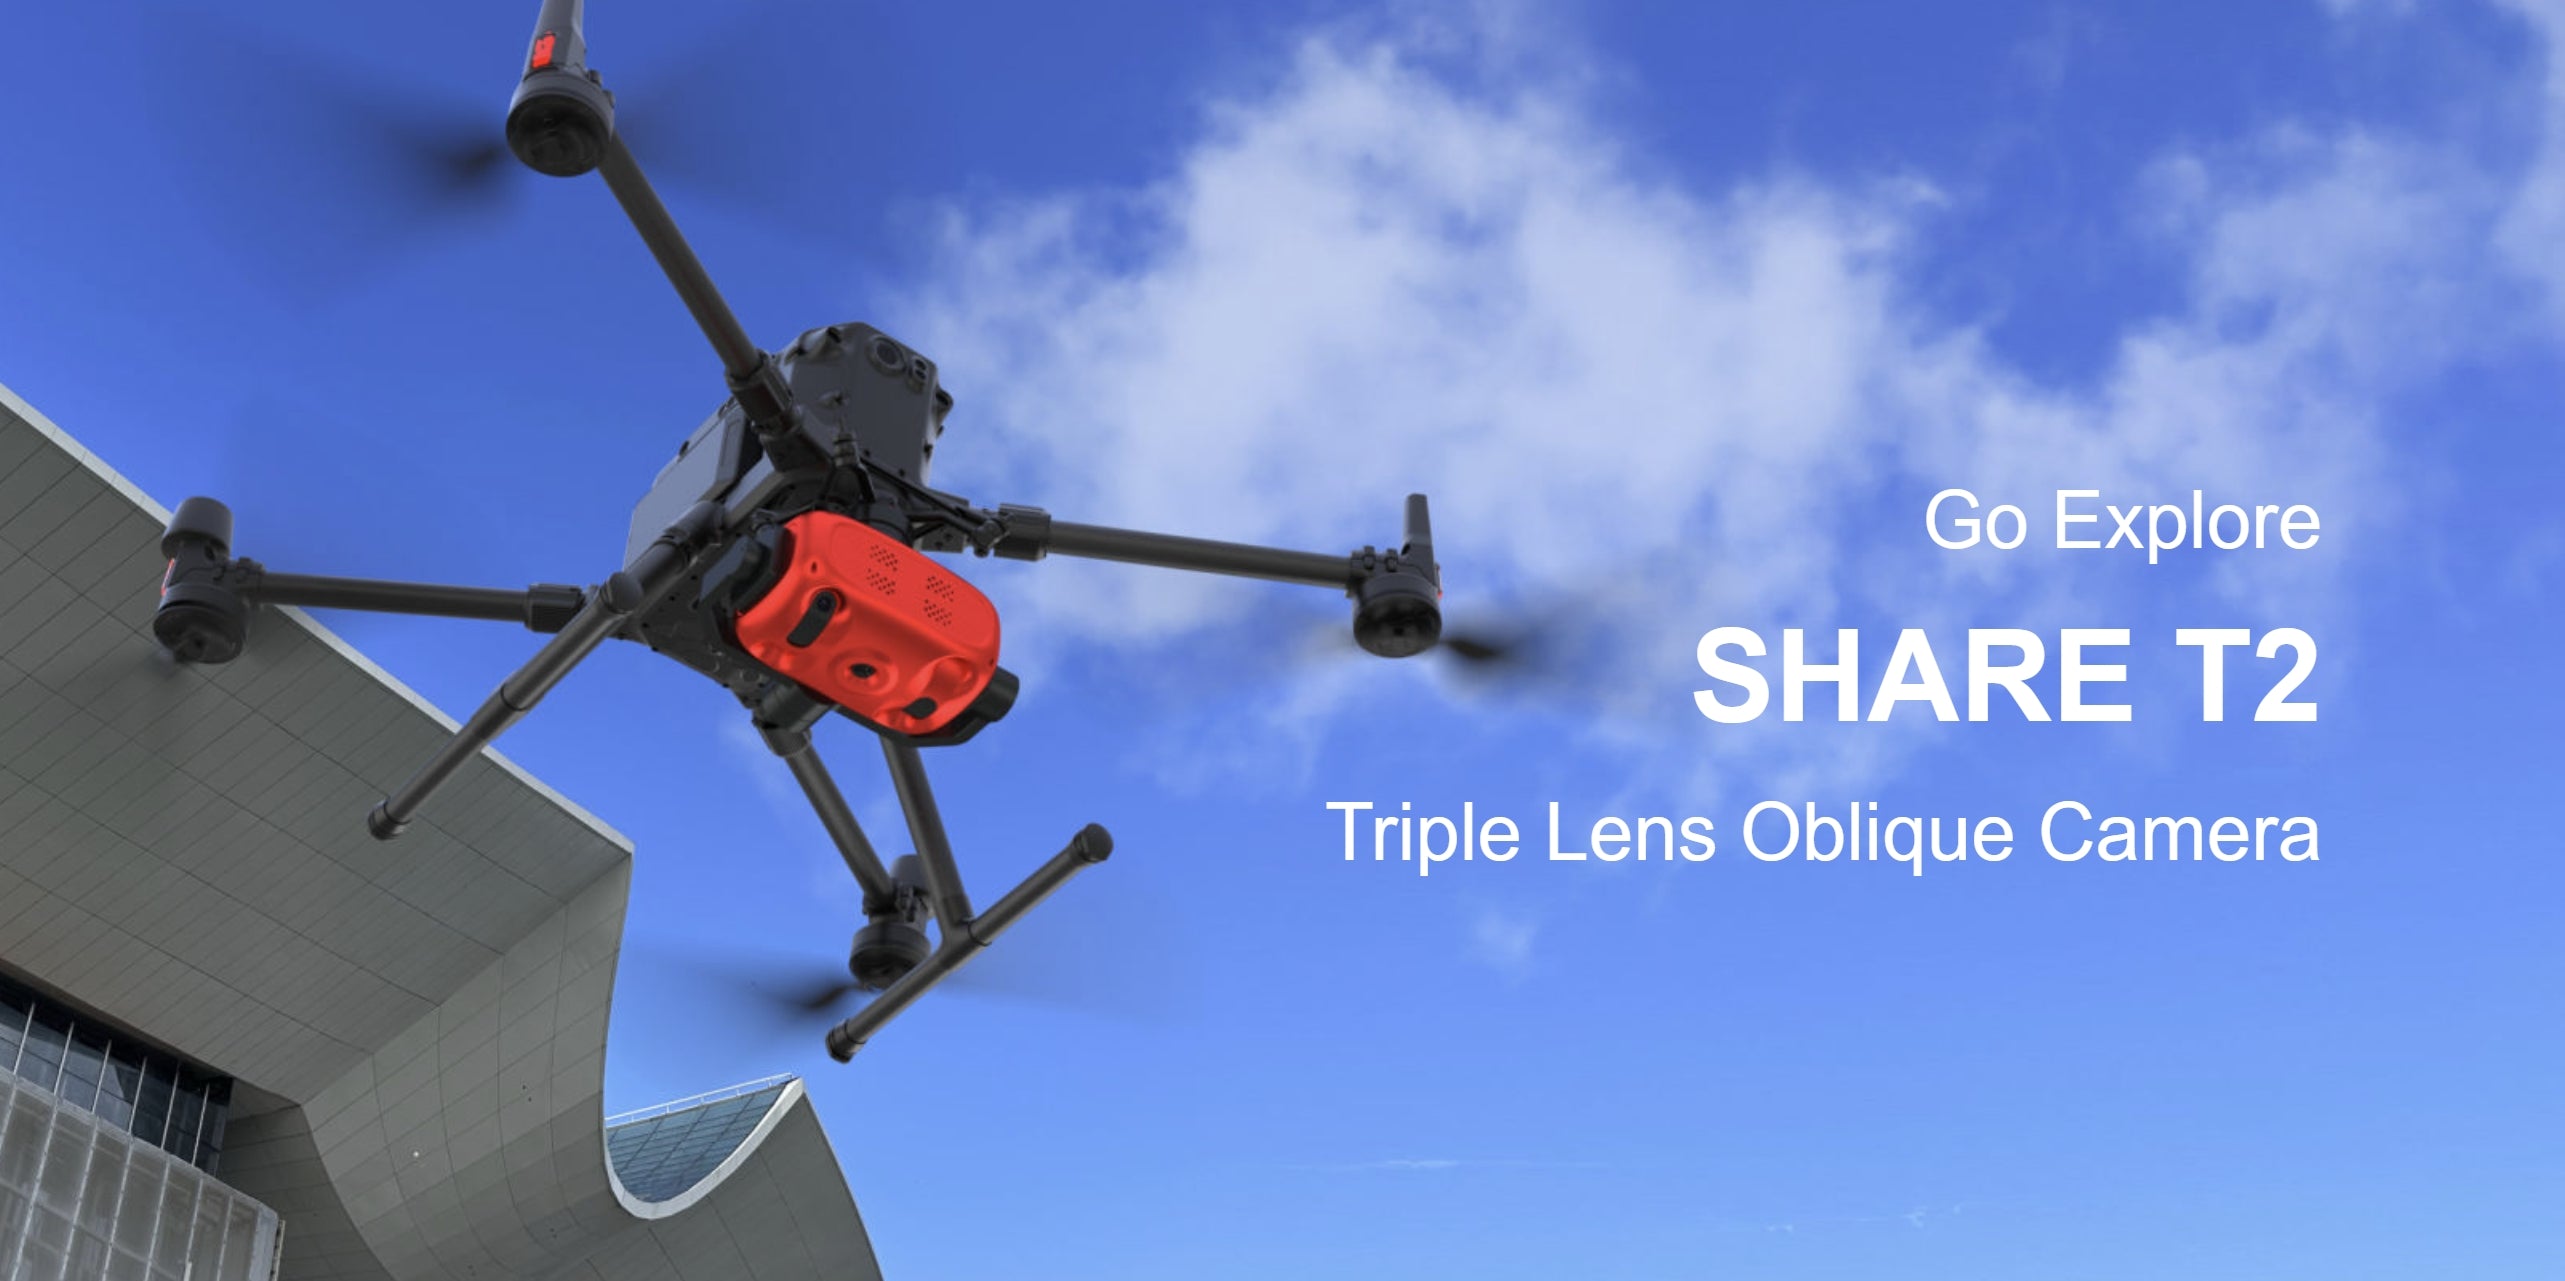 SHARE T2 - 75MP 3-Lens Oblique Aerial Camera, Capture 3D maps and aerial photos with a triple lens oblique camera for UAV drones.